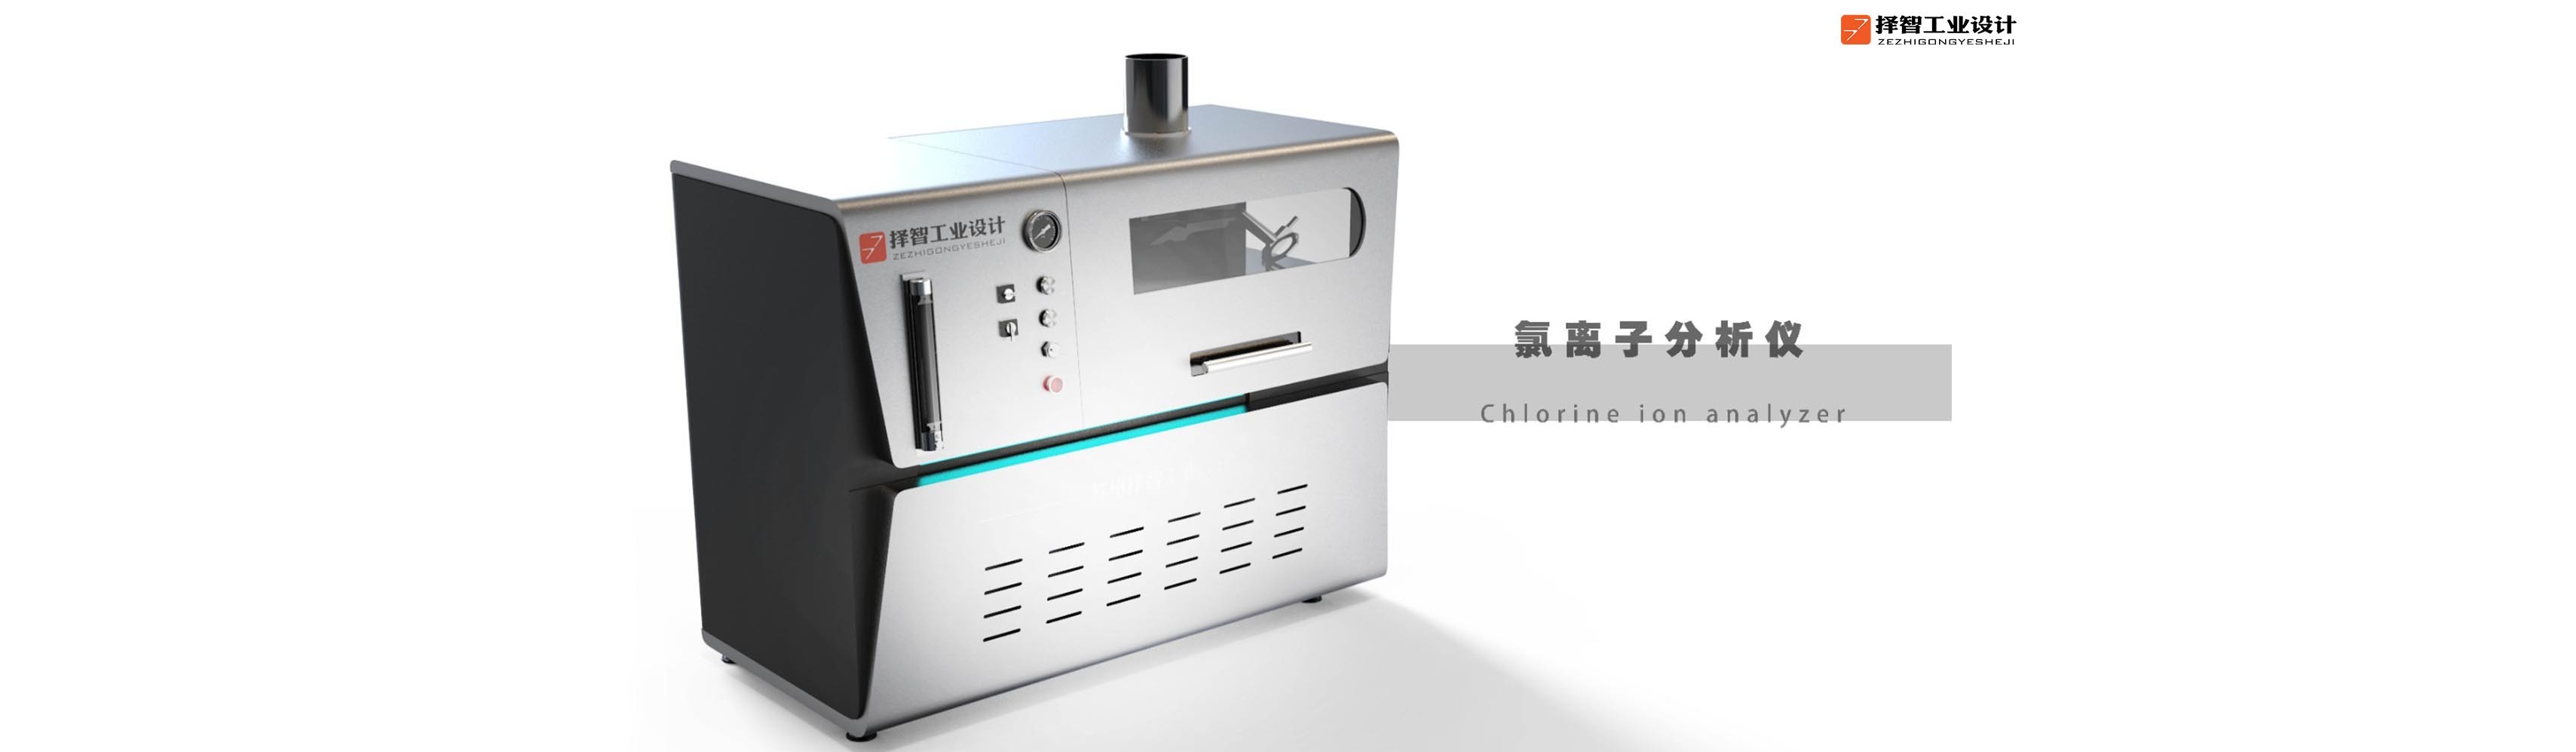 上海工业产品设计产品外观设计智能外观设计氯离子分析仪外观设计